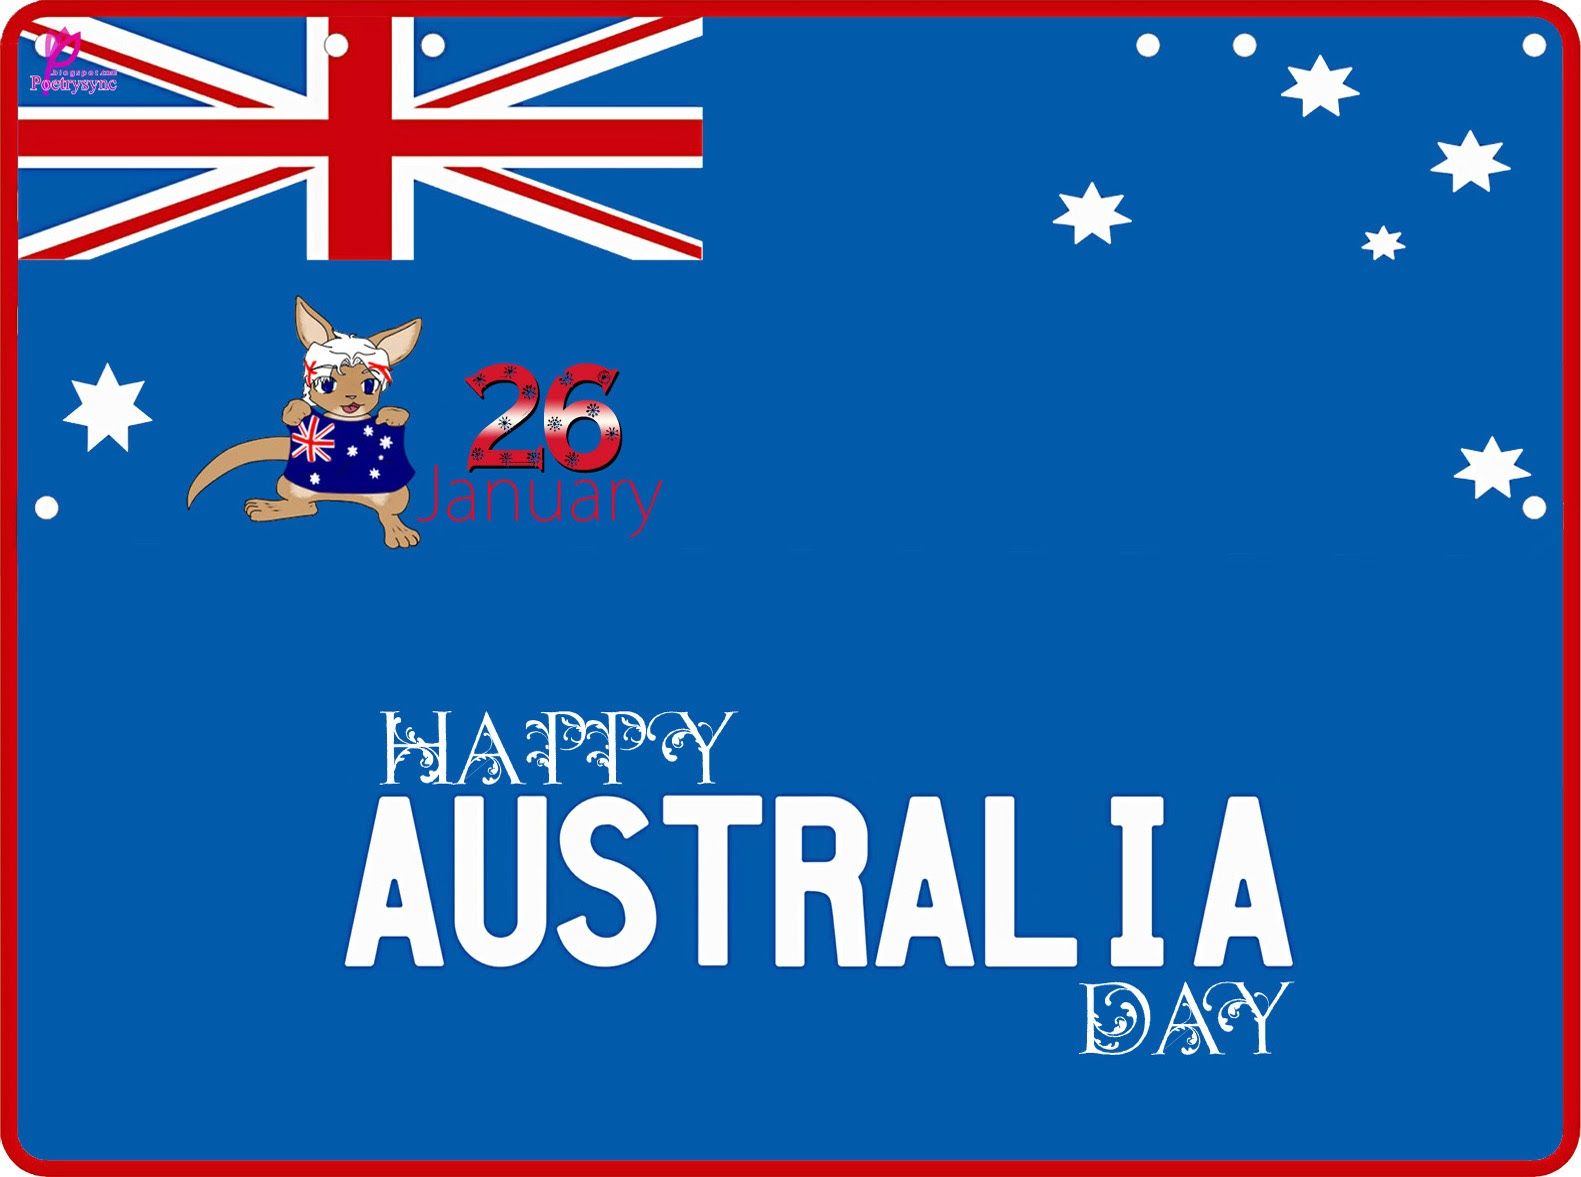 26 january happy australia day card